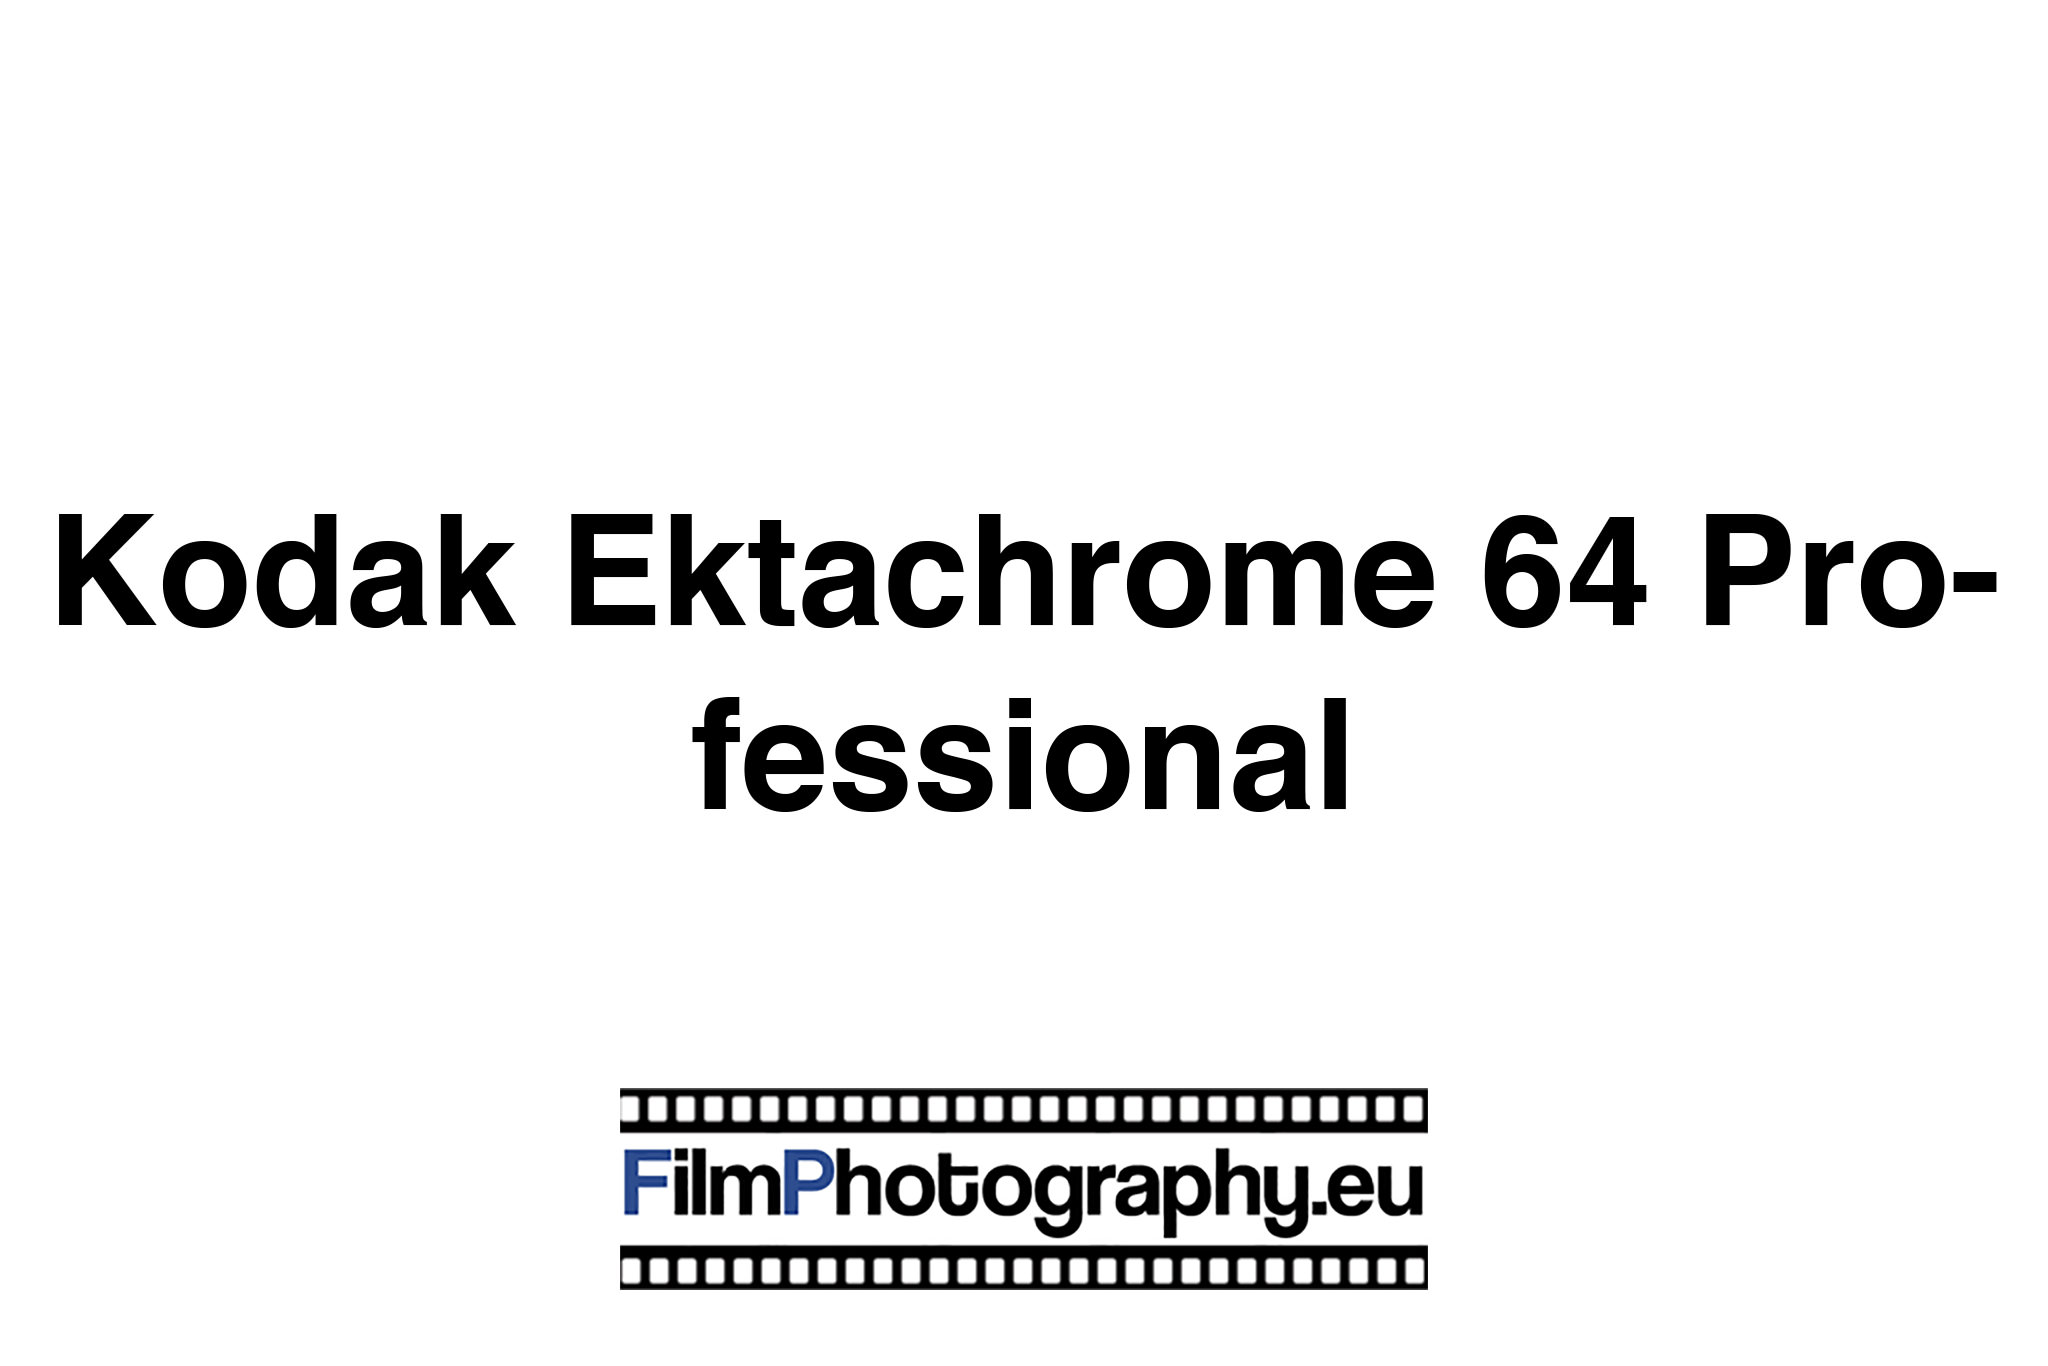 Kodak Ektachrome 64 Professional Guide for the slide film